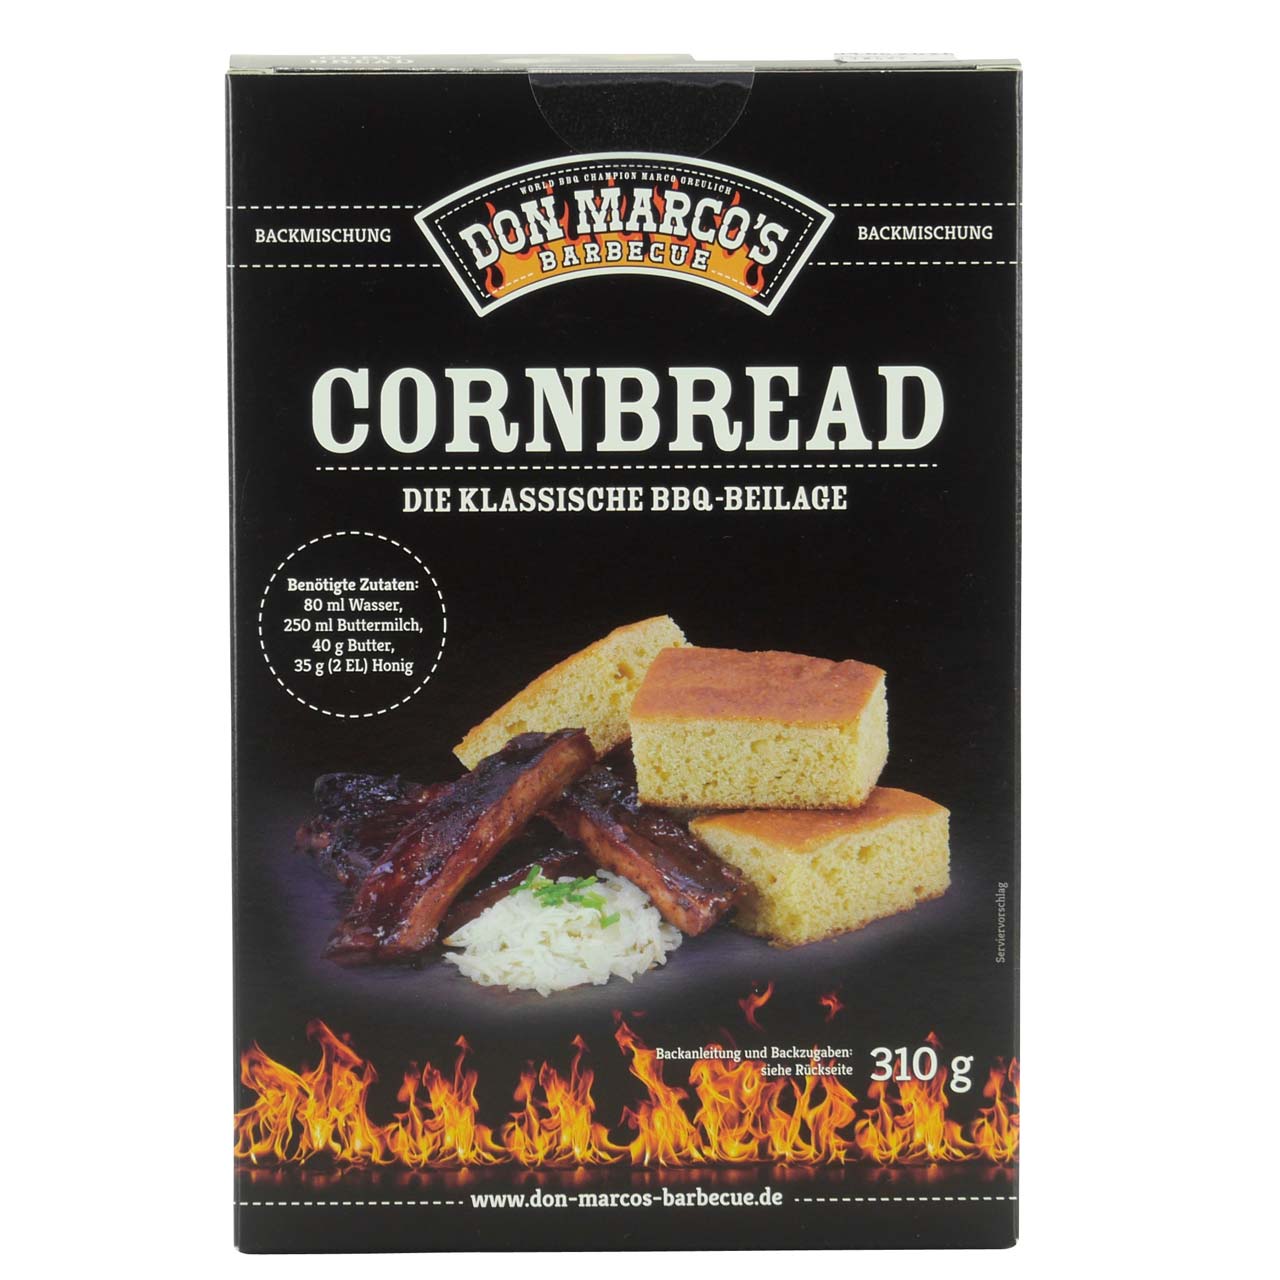 Don Marco's - Cornbread - Backmischung für amerikanisches Maisbrot